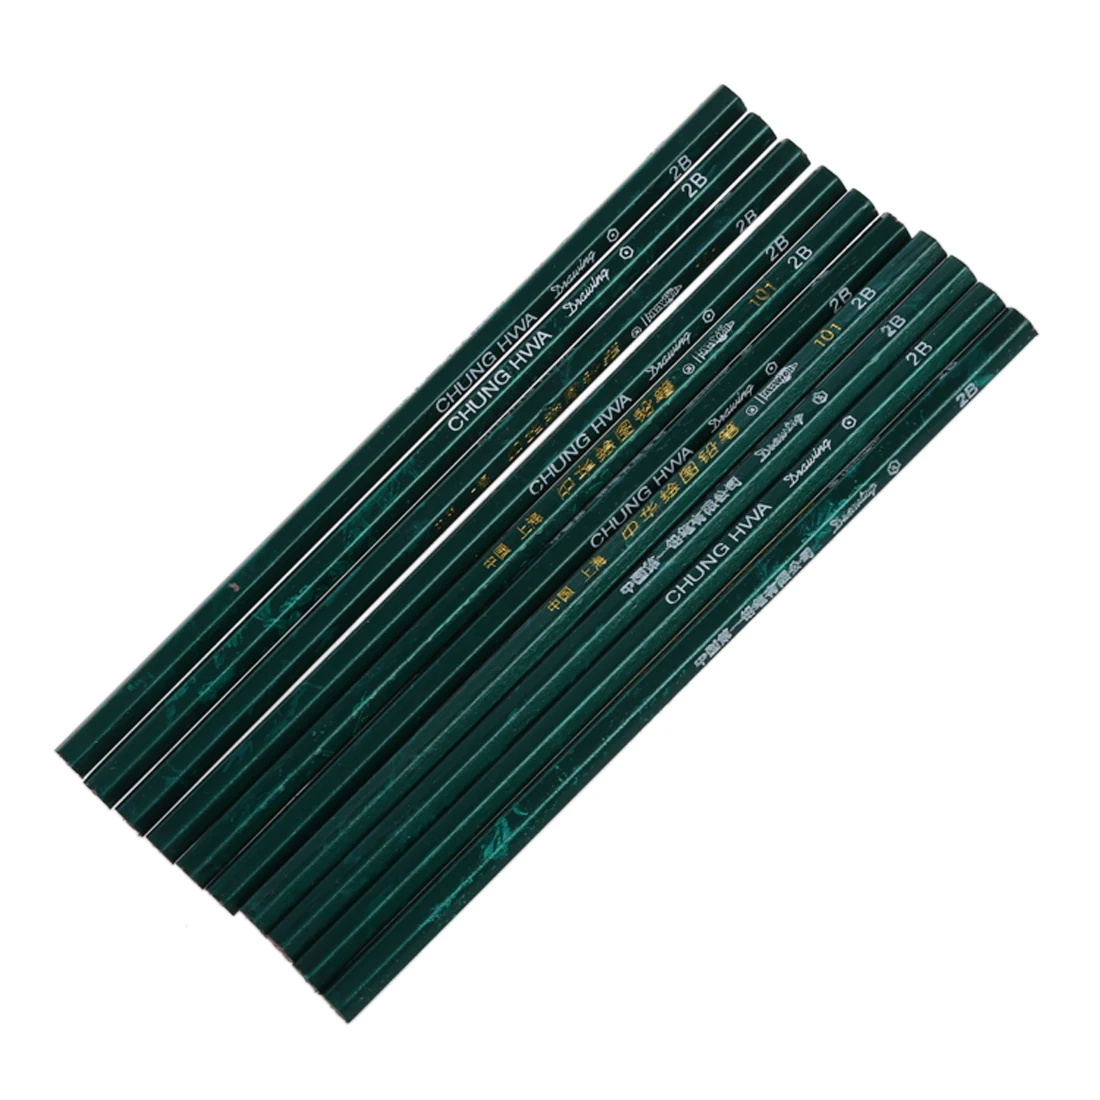 5 шт. 10x карандаш бумага гексагональной степени твердости весы 2b для школы и офиса зеленый